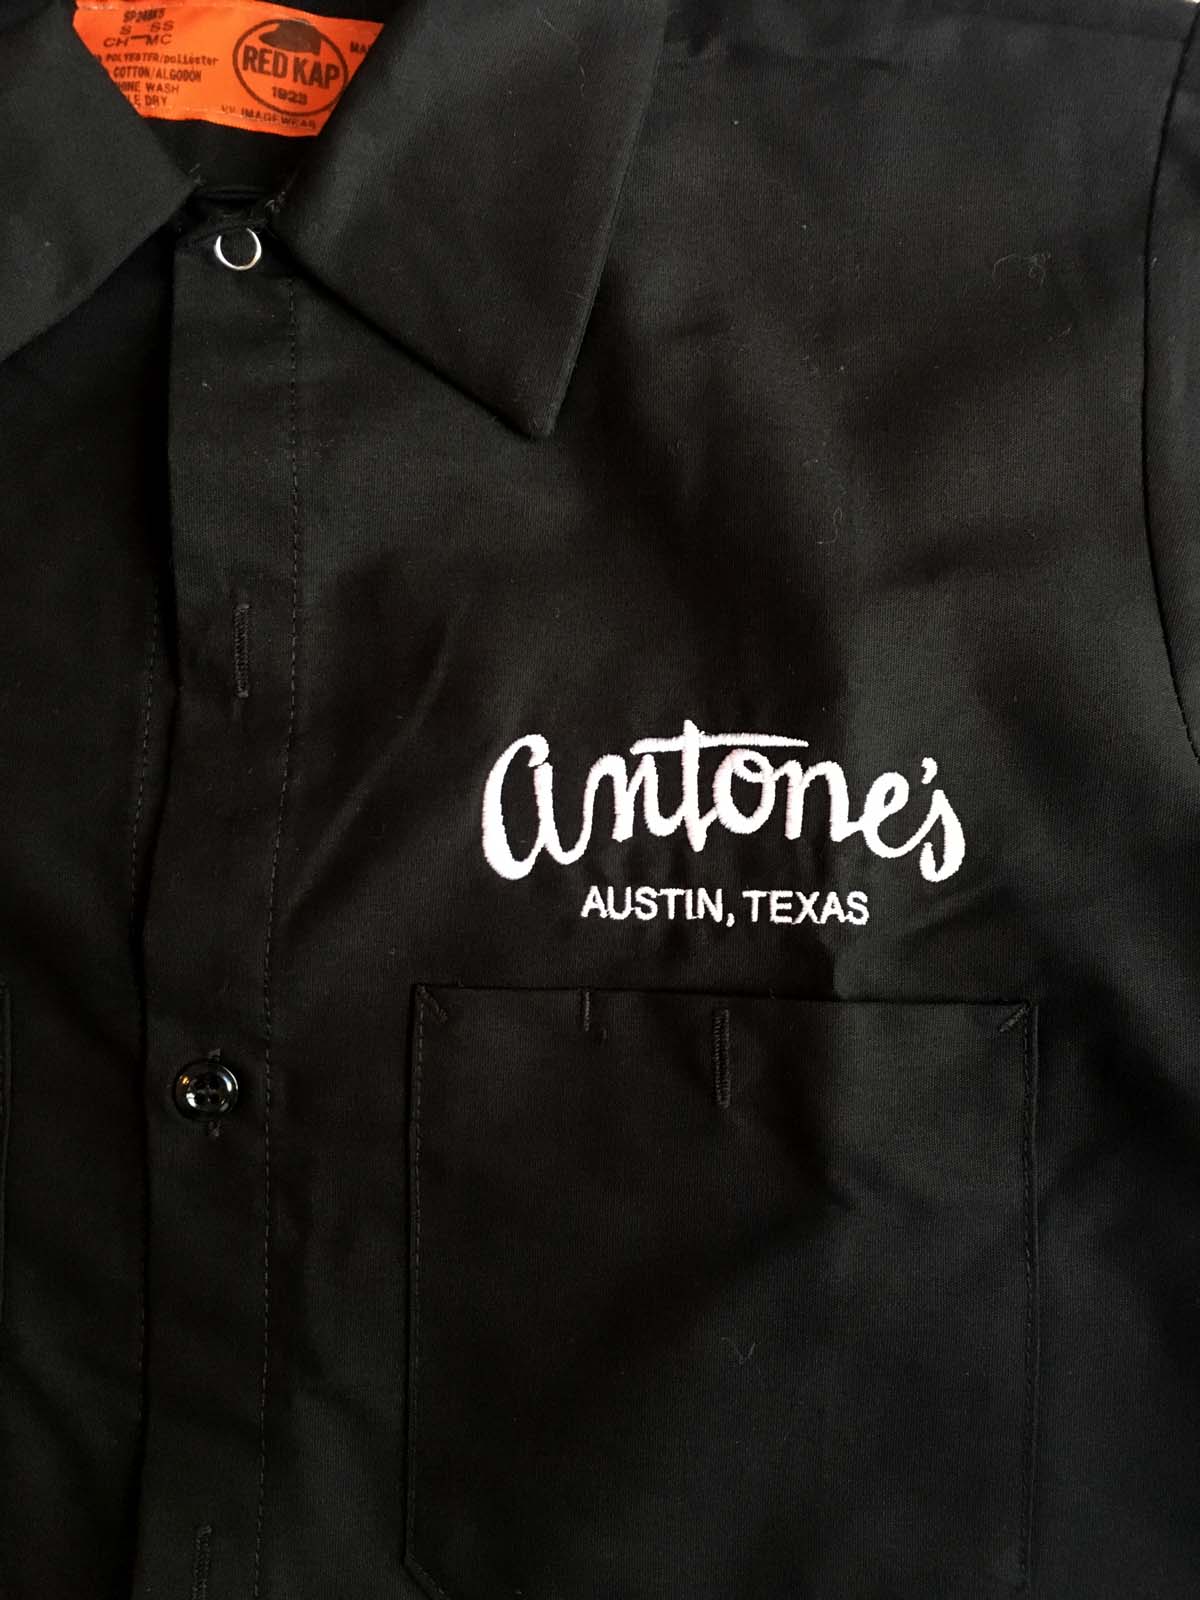 Antone's Work Shirt